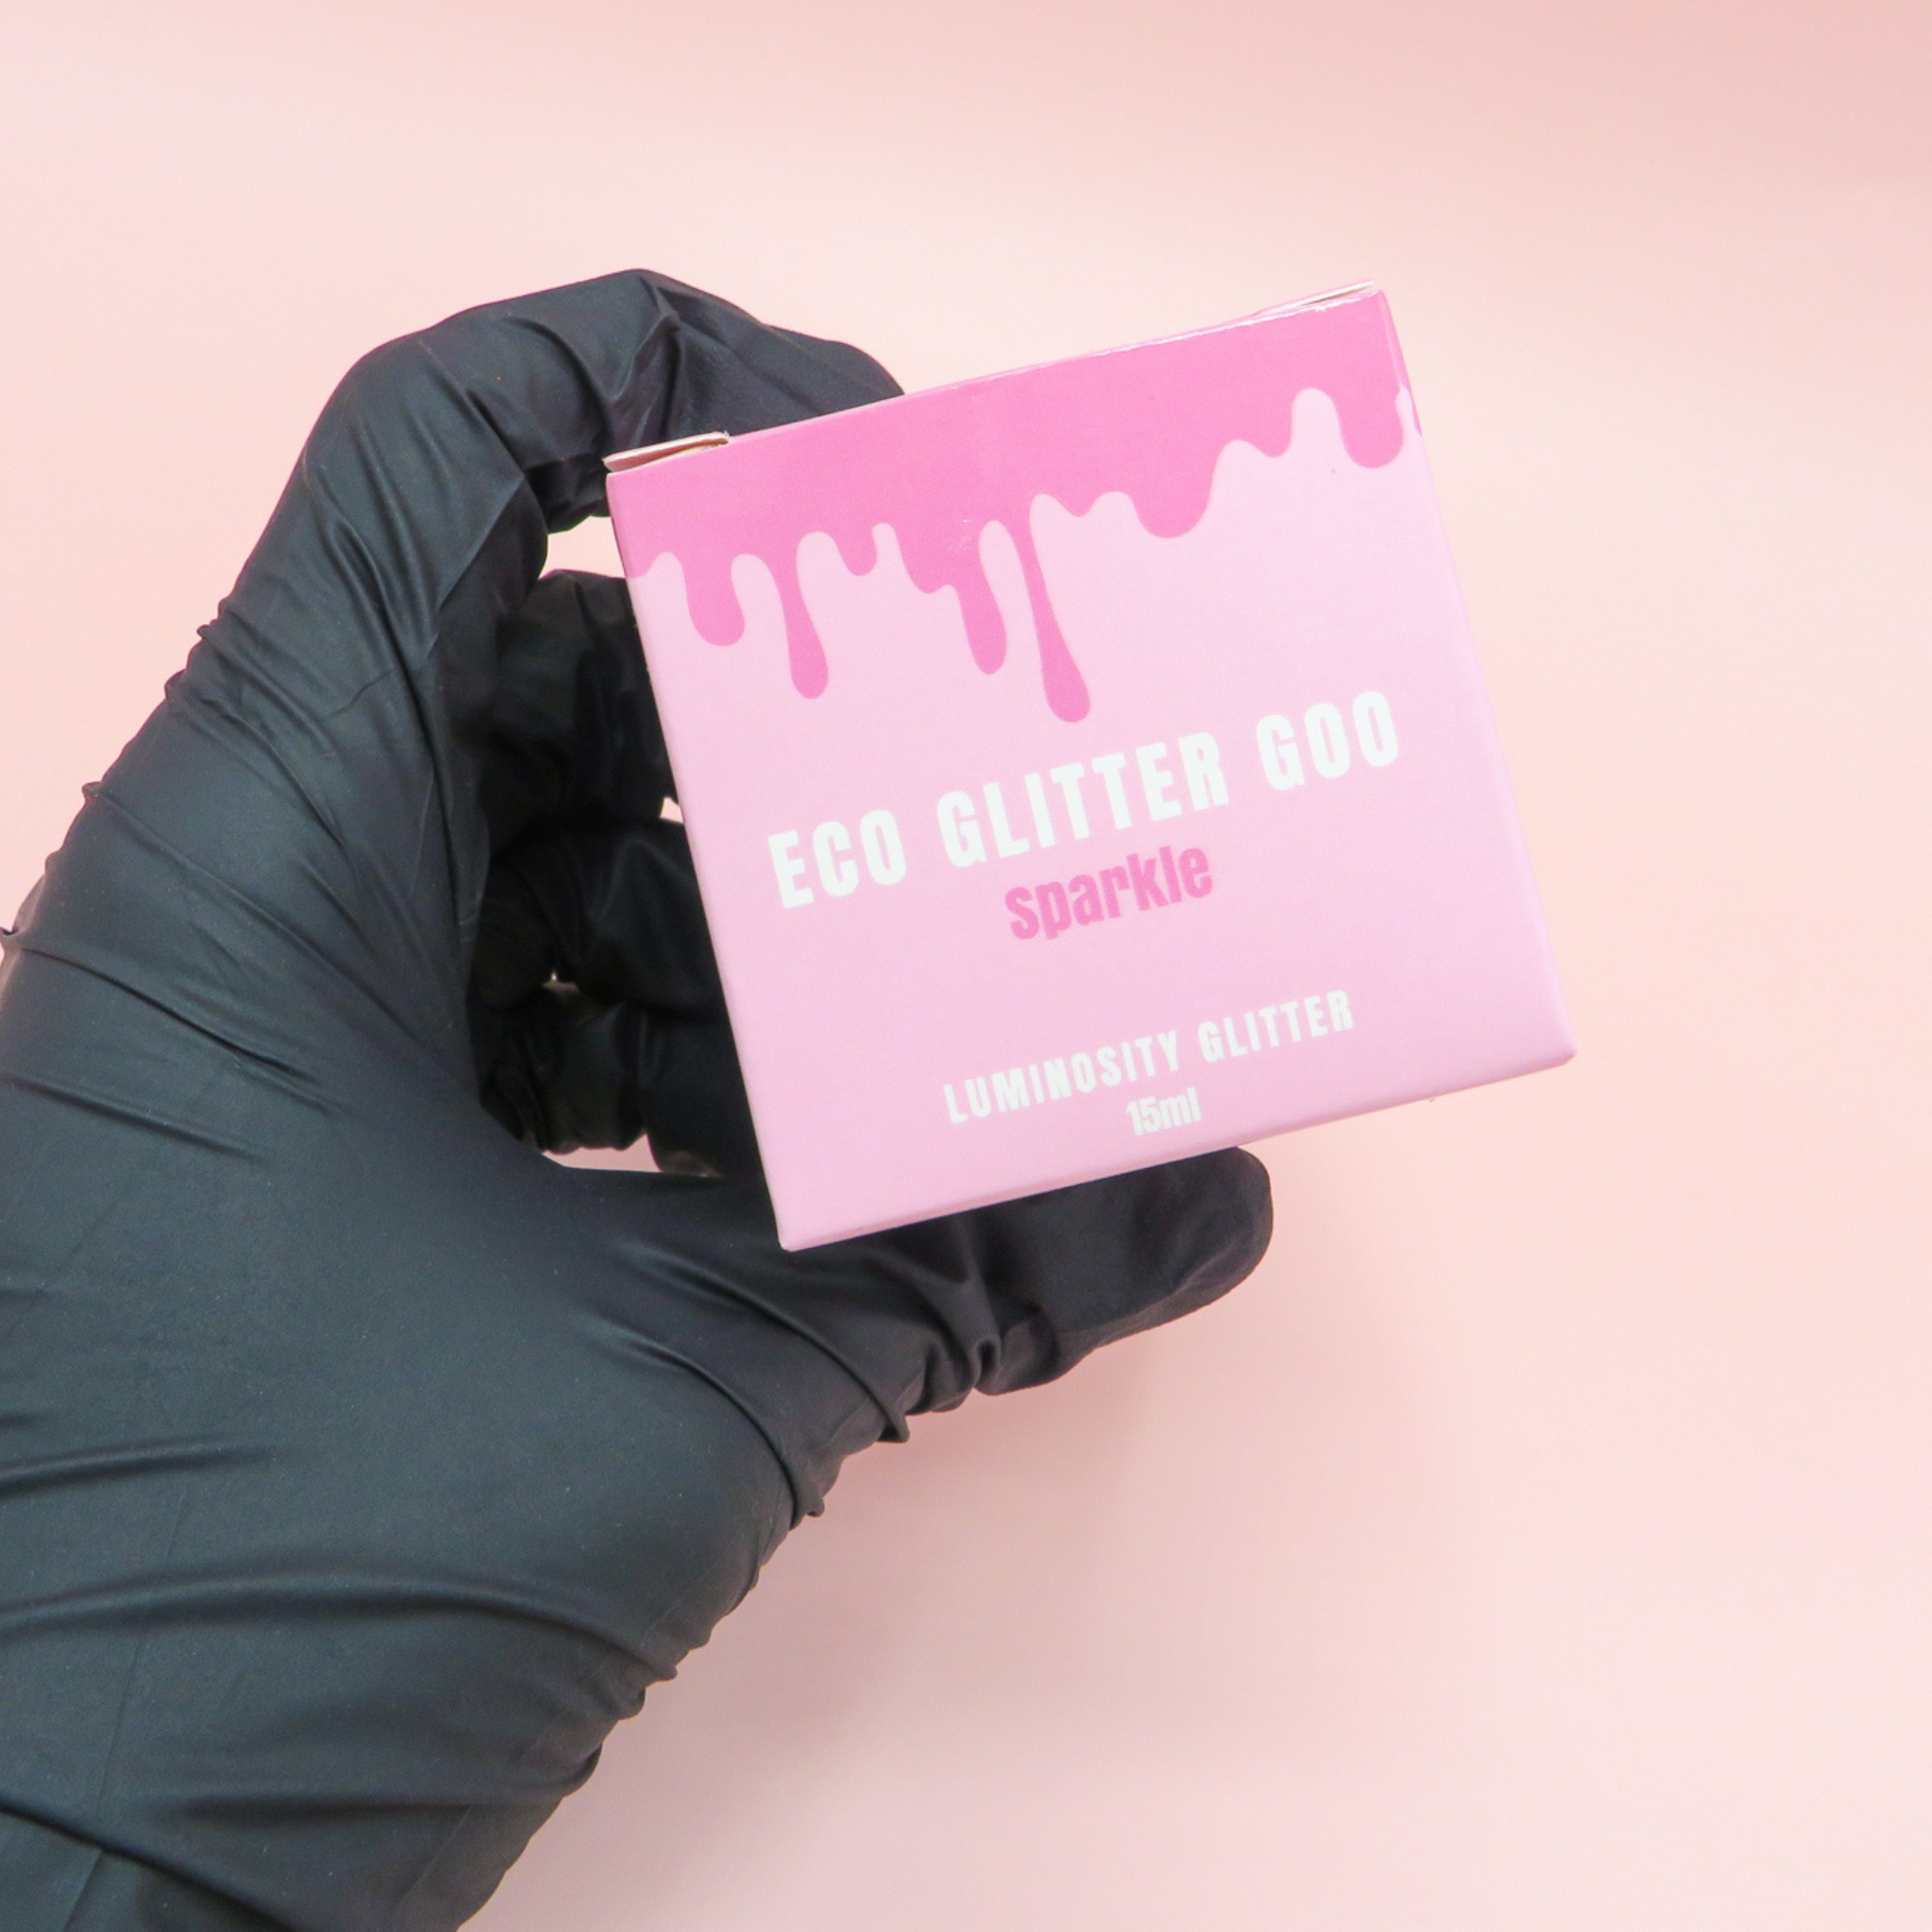 Black glove holding Luminosity Glitter's Eco Glitter Goo pink packaging for their glitter body gel